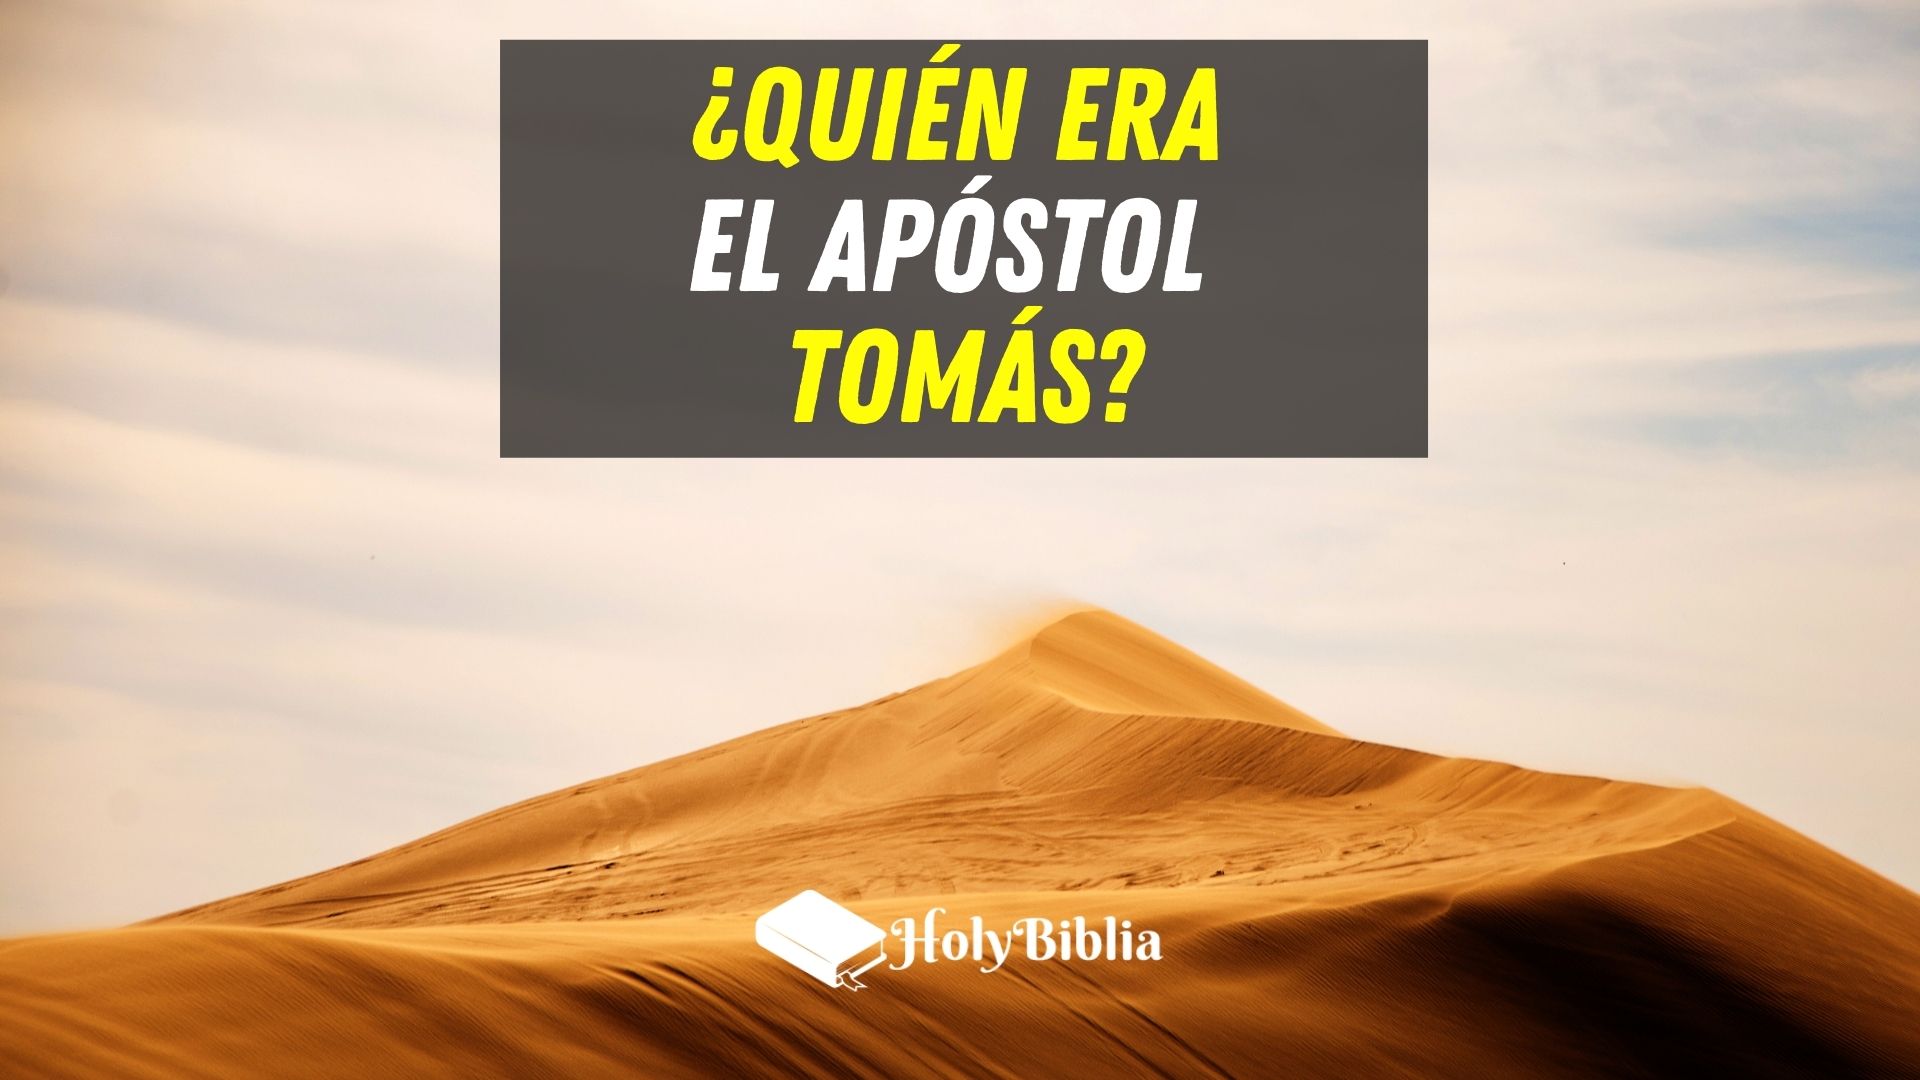 Quién era el apóstol Tomás en la Biblia